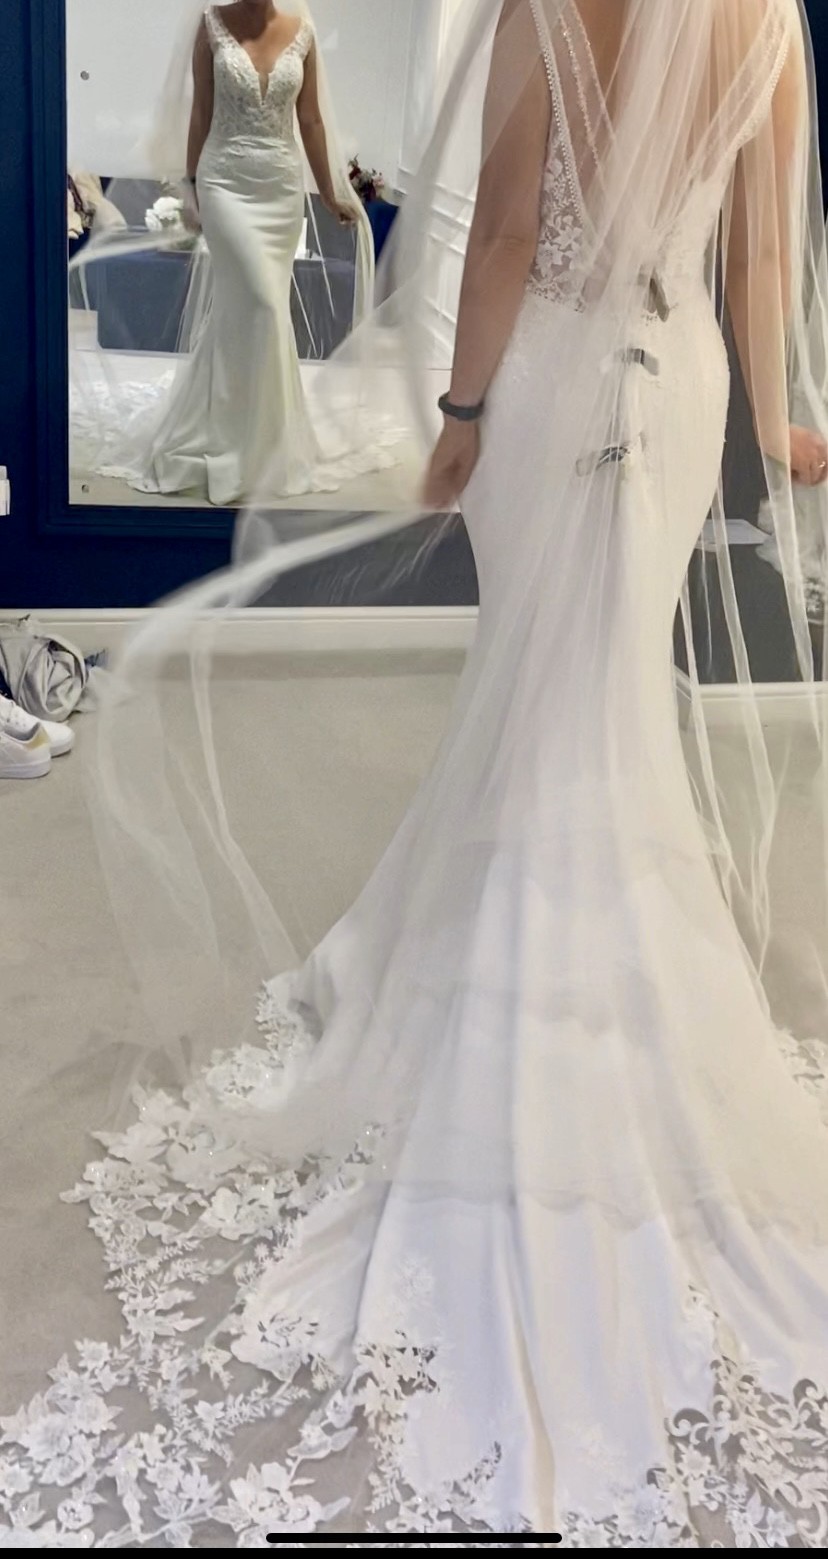 Portofino PORTOFINO RIMINI New Wedding Dress Save 36% - Stillwhite